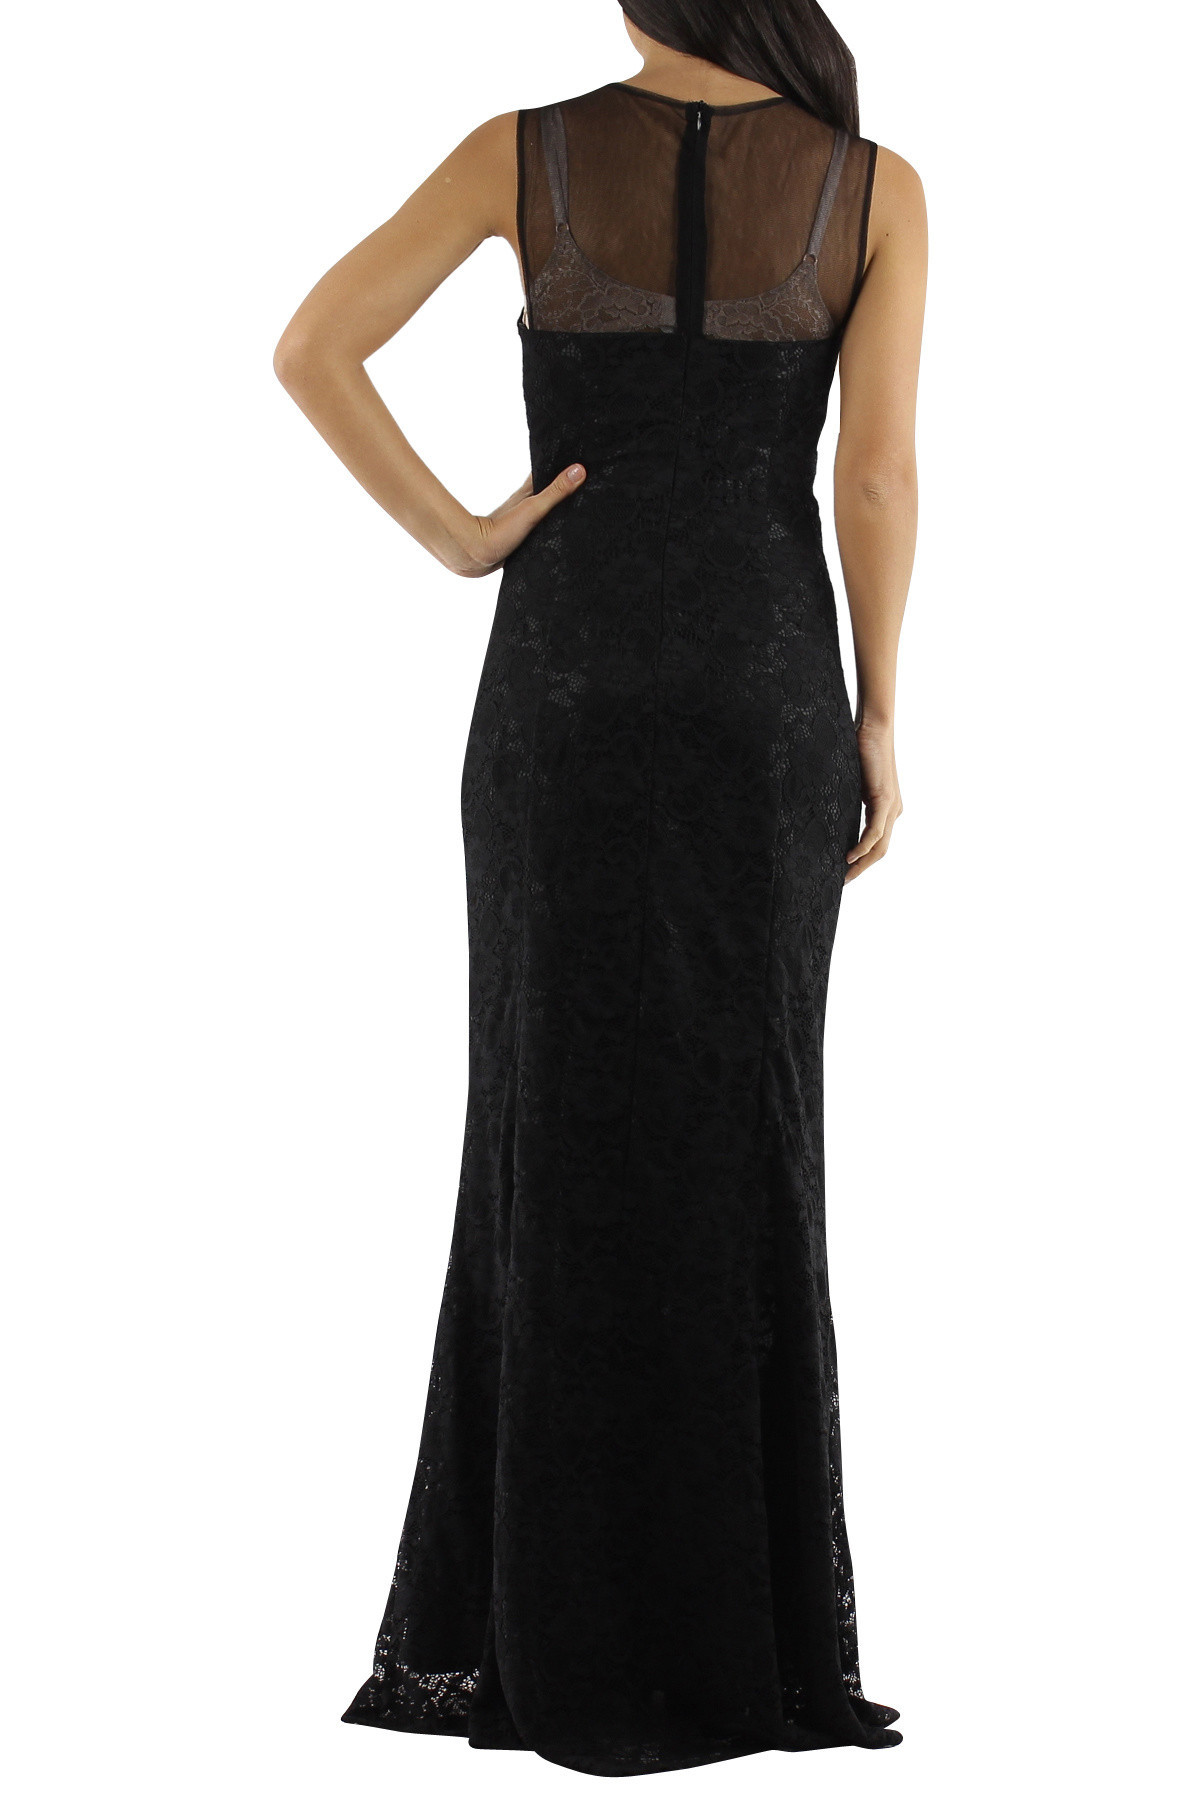 Společenské a plesové šaty krajkové dlouhé luxusní CHARM'S Paris černé - Černá / XS - CHARM'S Paris XS